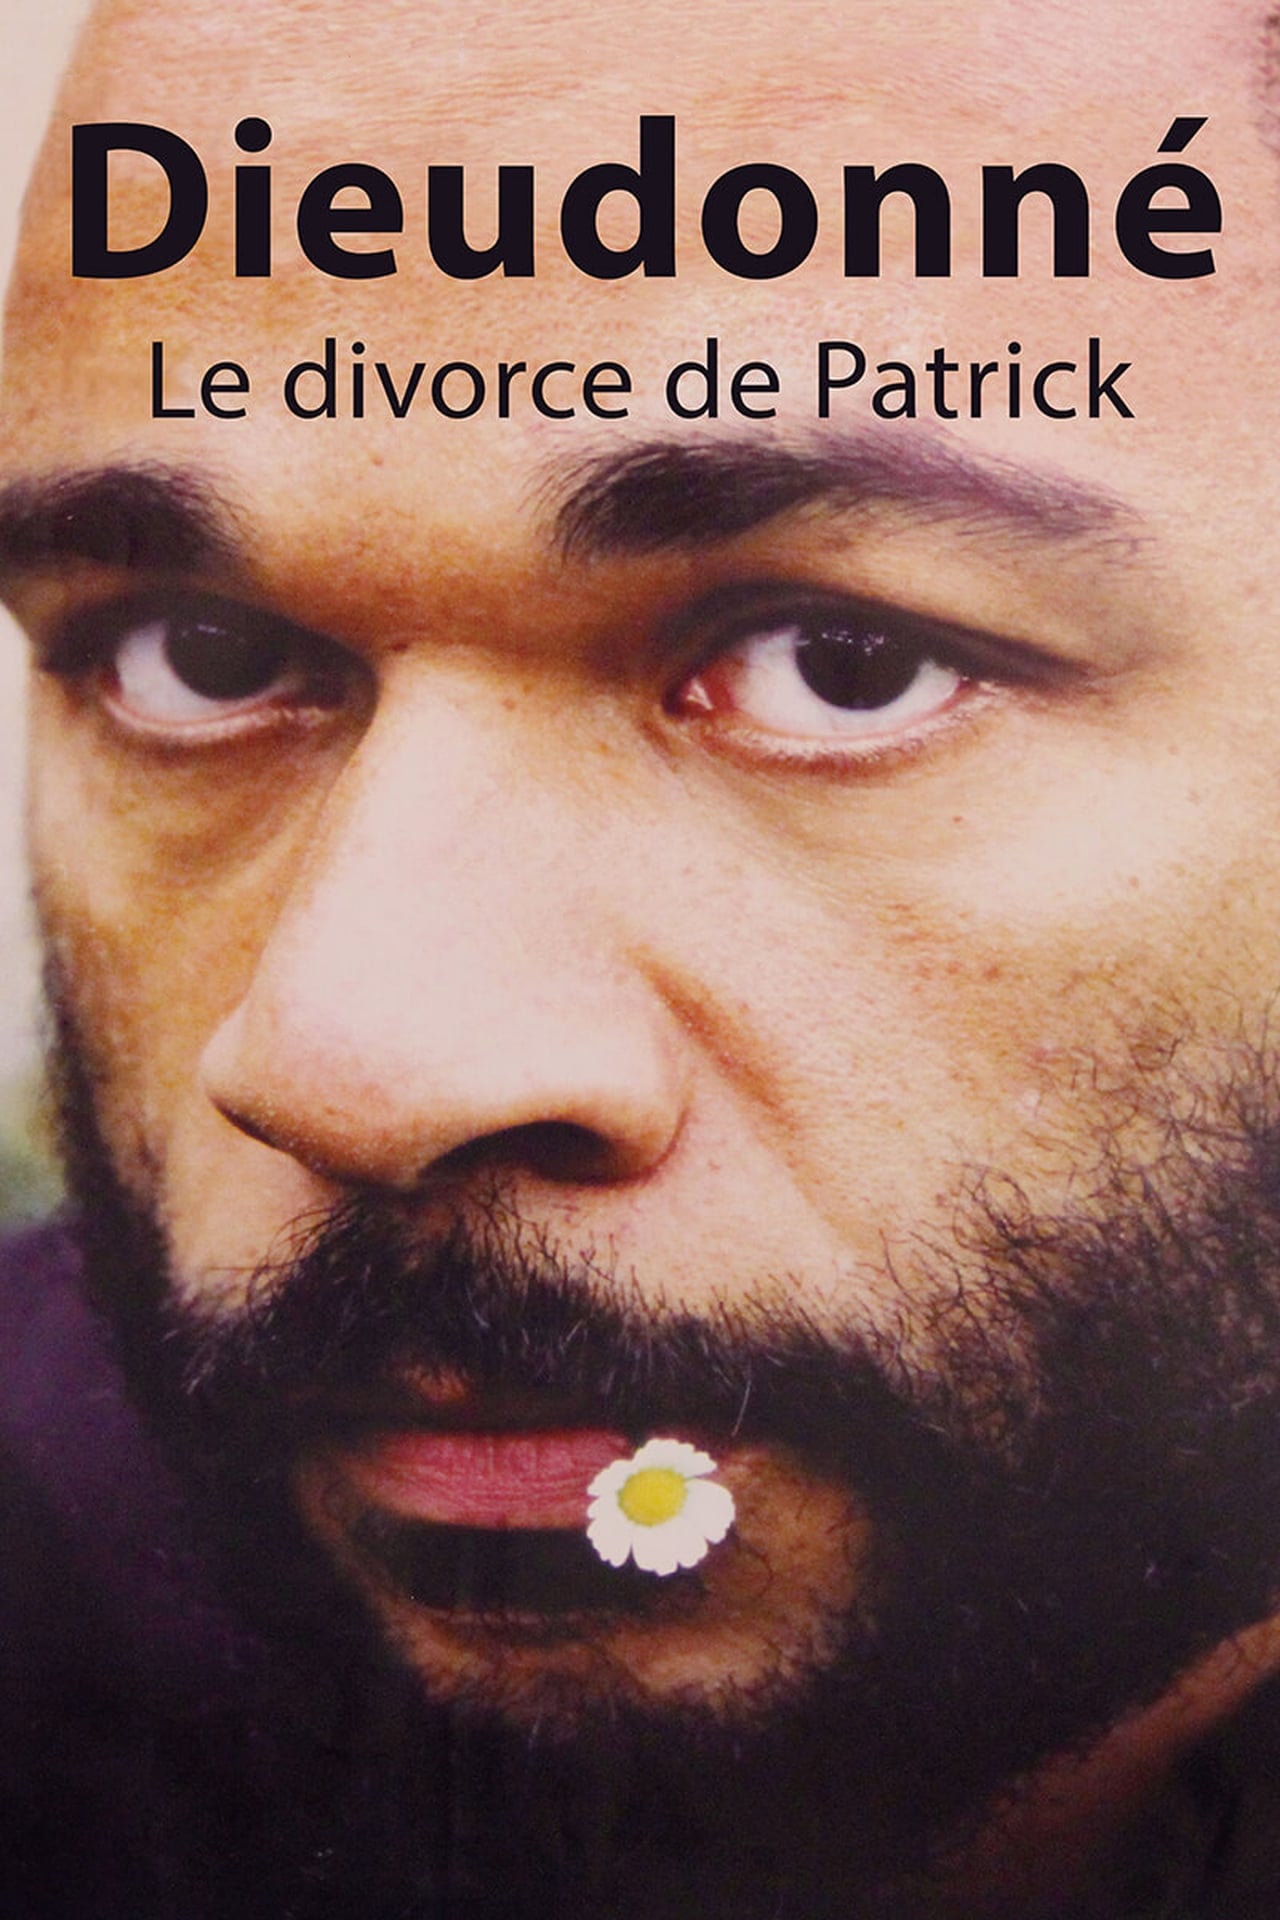 Dieudonné - Le Divorce de Patrick (2003)